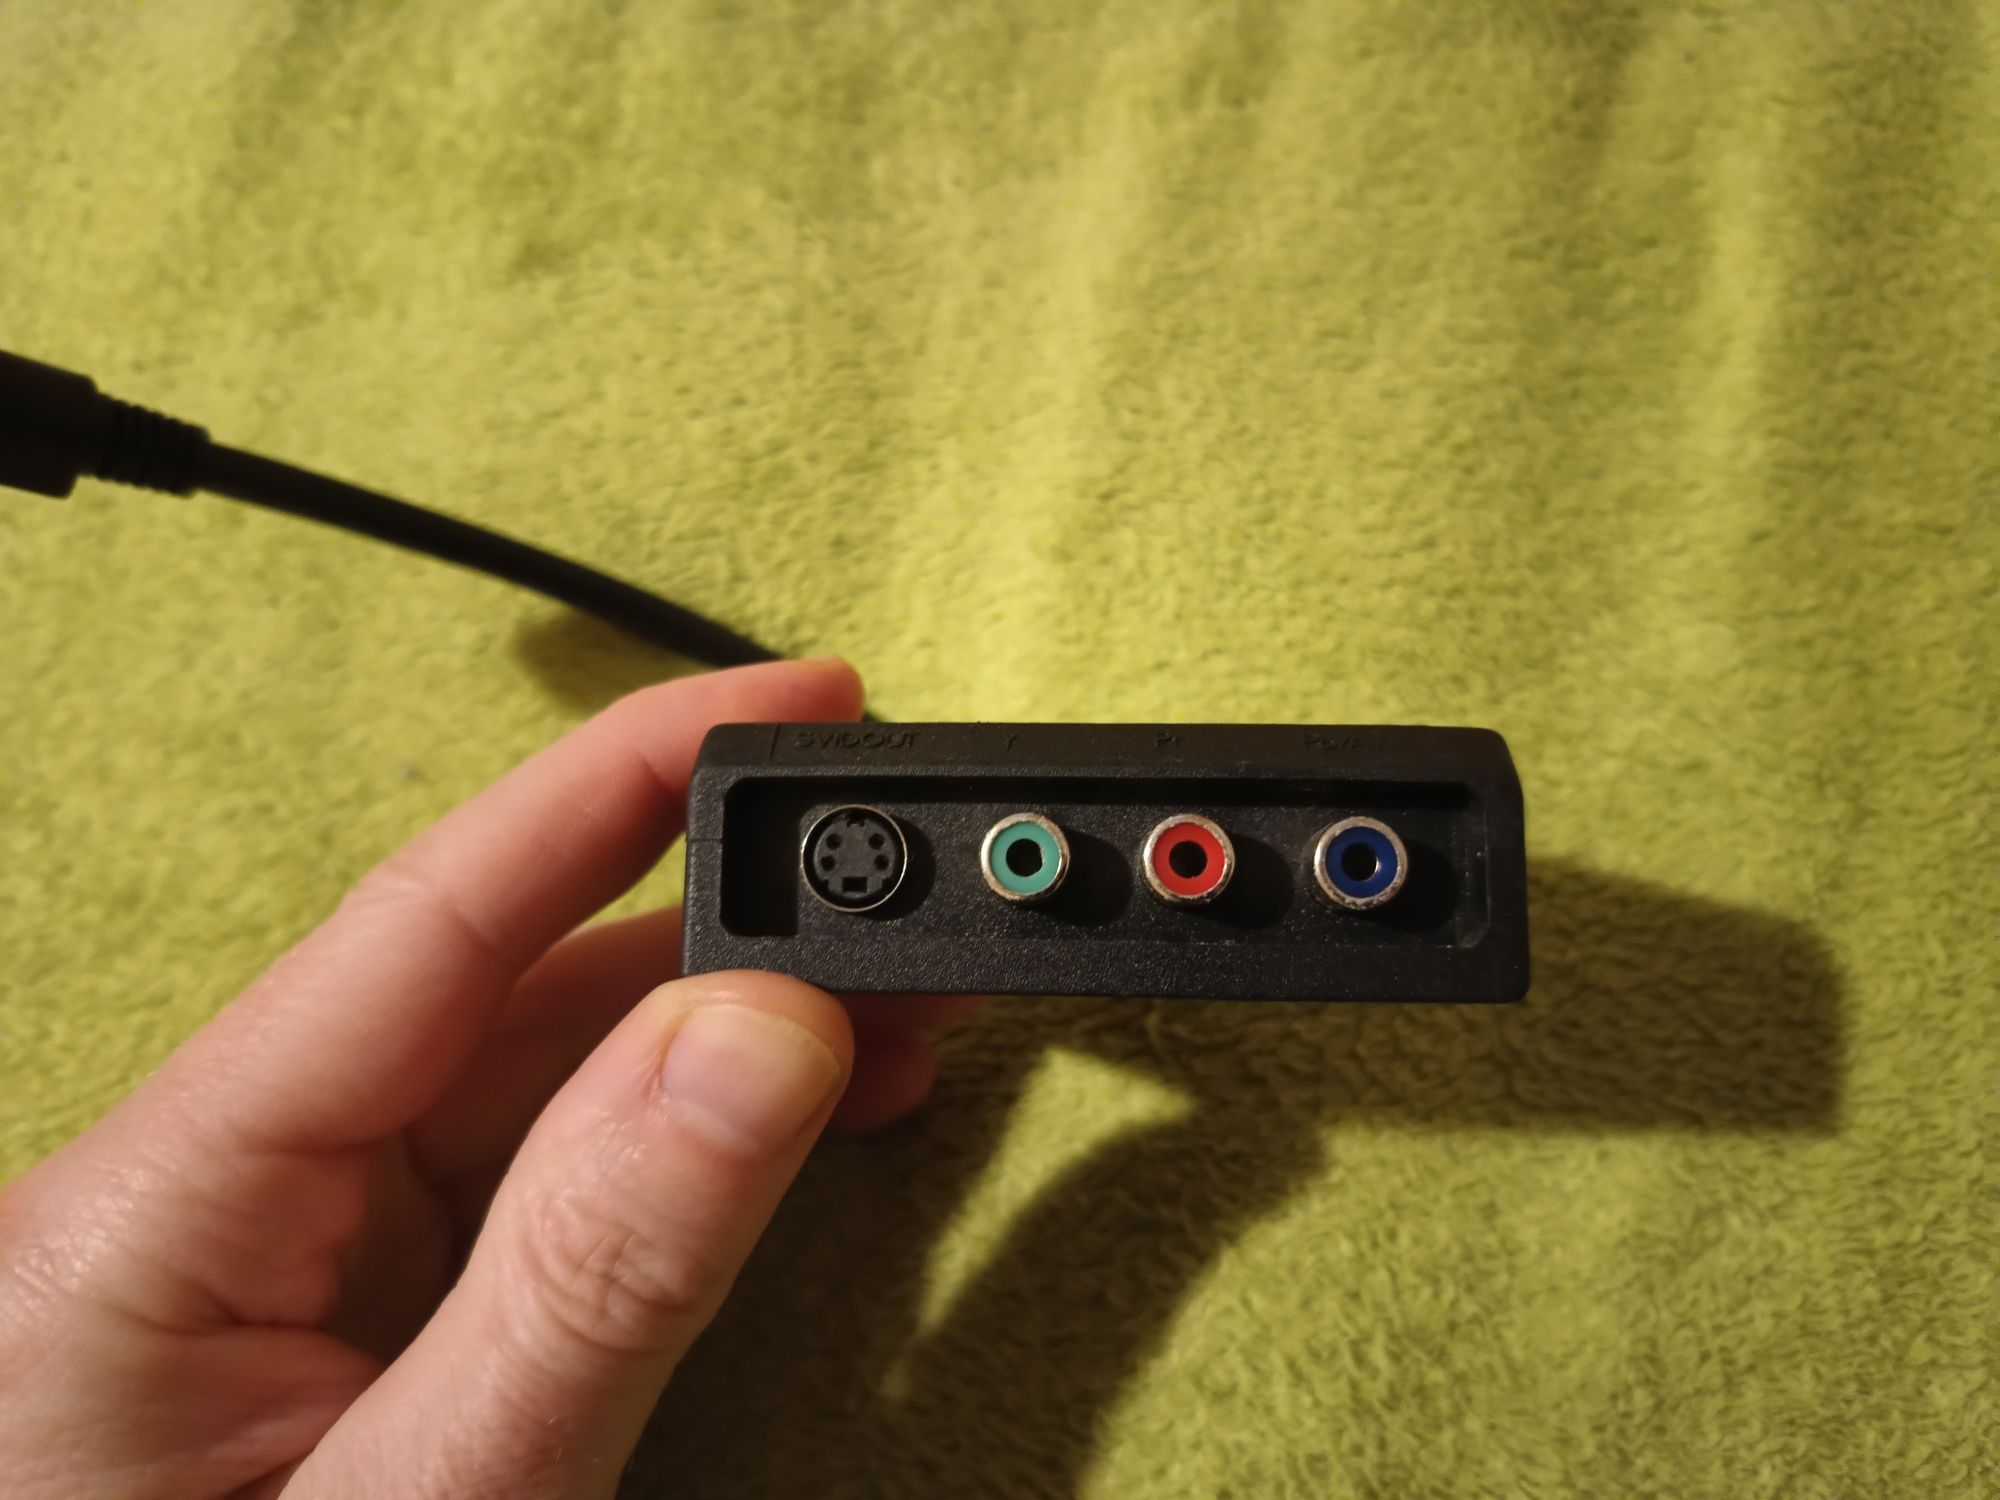 Adapter przejściówka Gigabyte 9 pin S-video